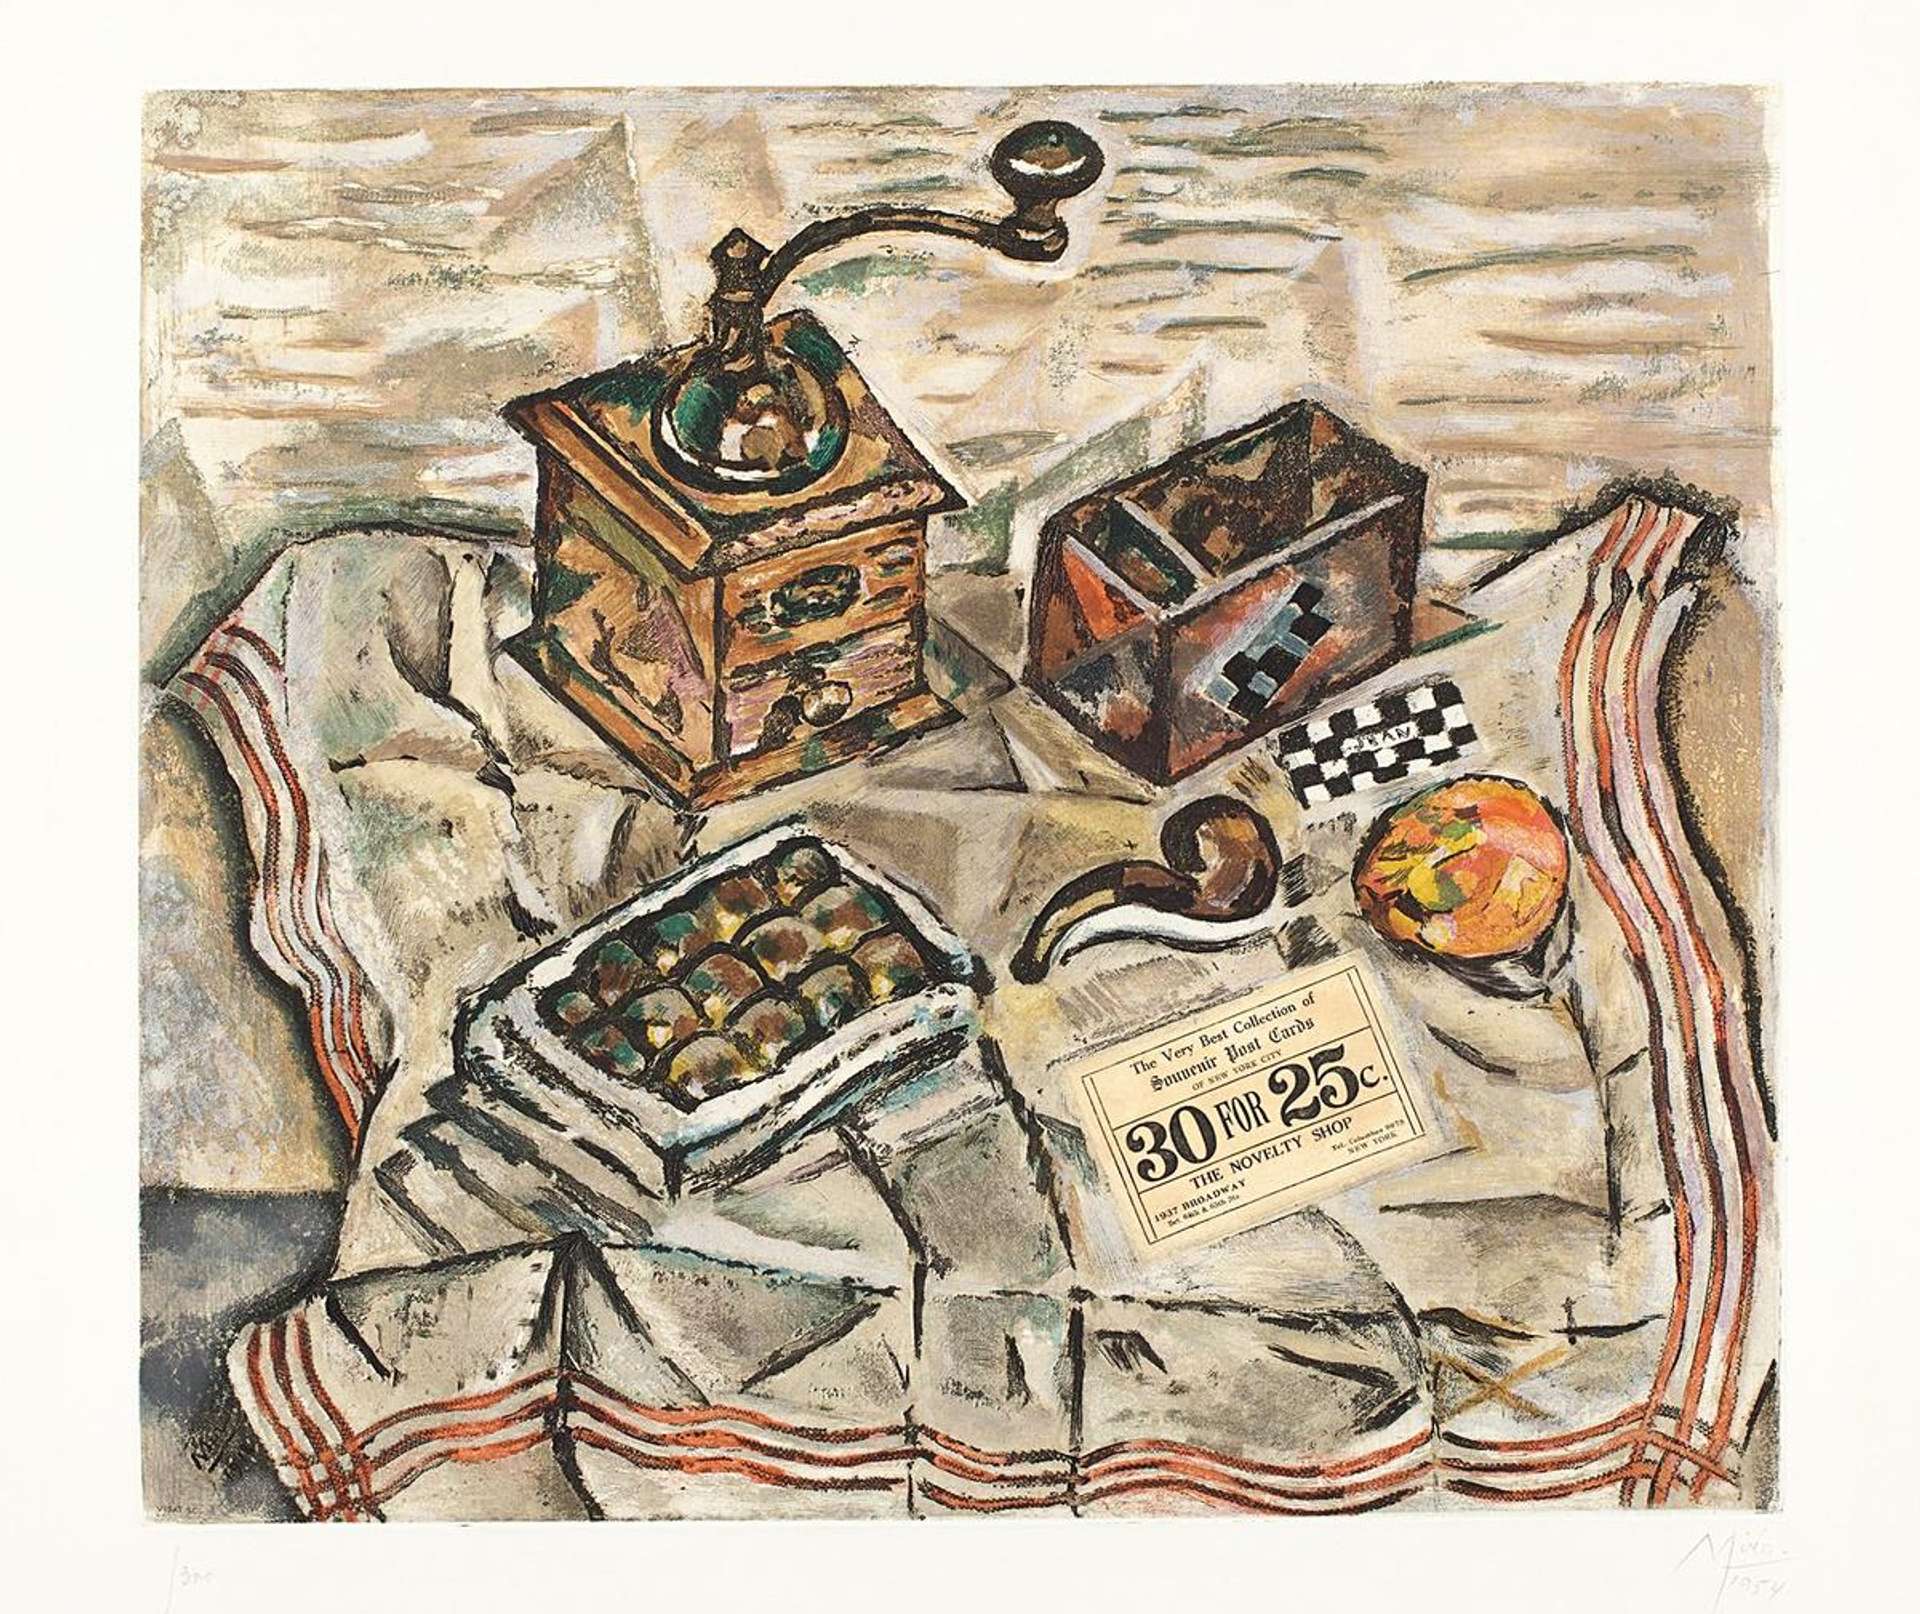 Le Moulin - Signed Print by Joan Miró 1954 - MyArtBroker